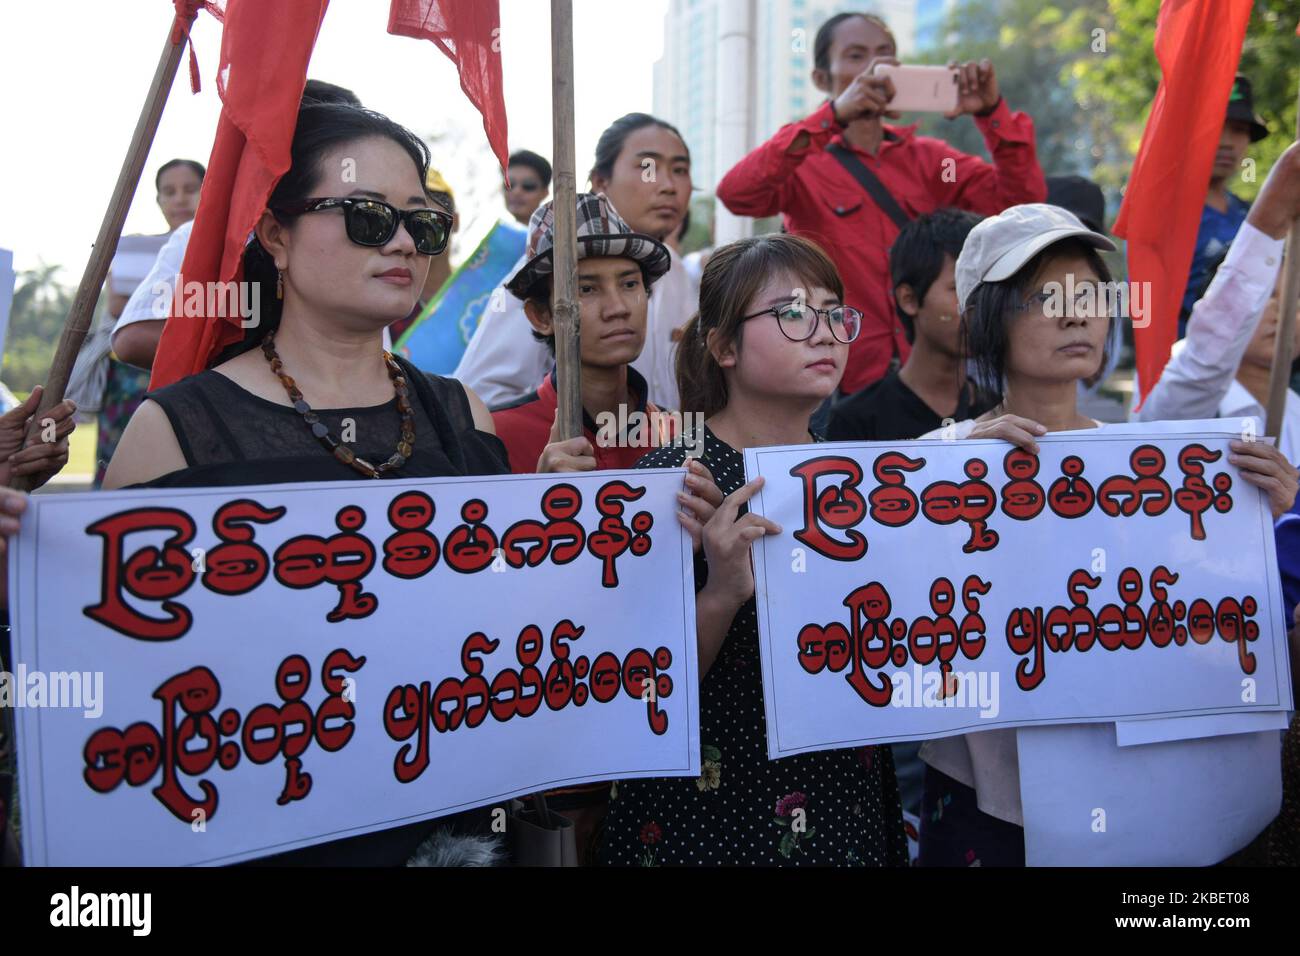 Les manifestants tiennent des pancartes lors d'une manifestation contre le projet du barrage Myit Sone à Yangon, au Myanmar, le 18 janvier 2019. La manifestation a eu lieu en même temps que la visite du président chinois Xi Jinping en Birmanie. Le projet de barrage MyIT Sone dans l’État de Kachin est financé par la State Power Investment Corporation chinoise. Le projet a commencé en 2009 et a été suspendu en septembre 2011 après des manifestations publiques à l'échelle nationale. (Photo de Shwe Paw Mya Tin/NurPhoto) Banque D'Images